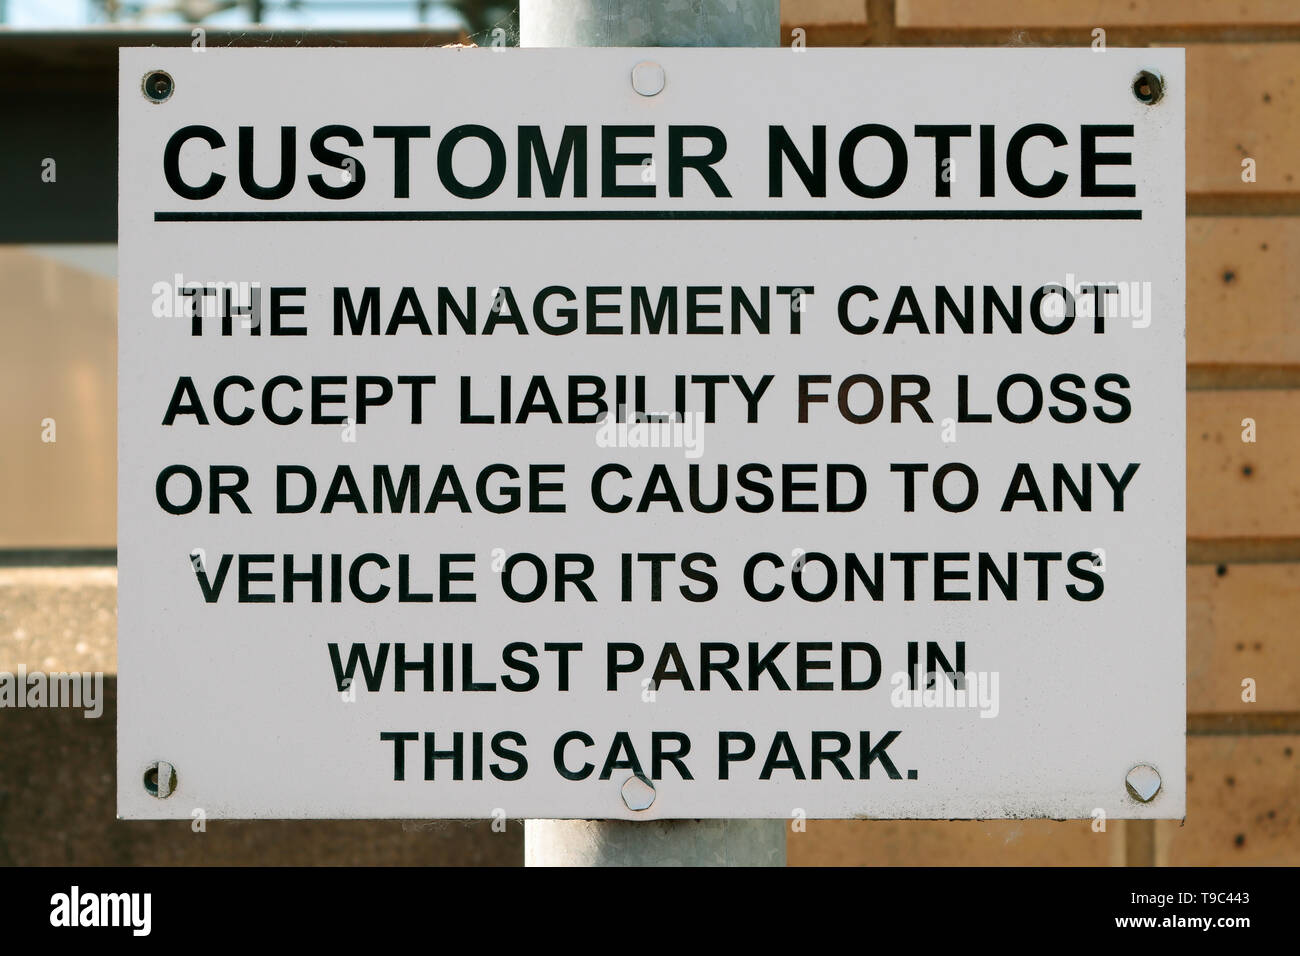 Aviso a clientes - la administración no puede aceptar responsabilidad por pérdida o damagecaused a cualquier vehículo o su contenido mientras estacionado en este aparcamiento. Foto de stock